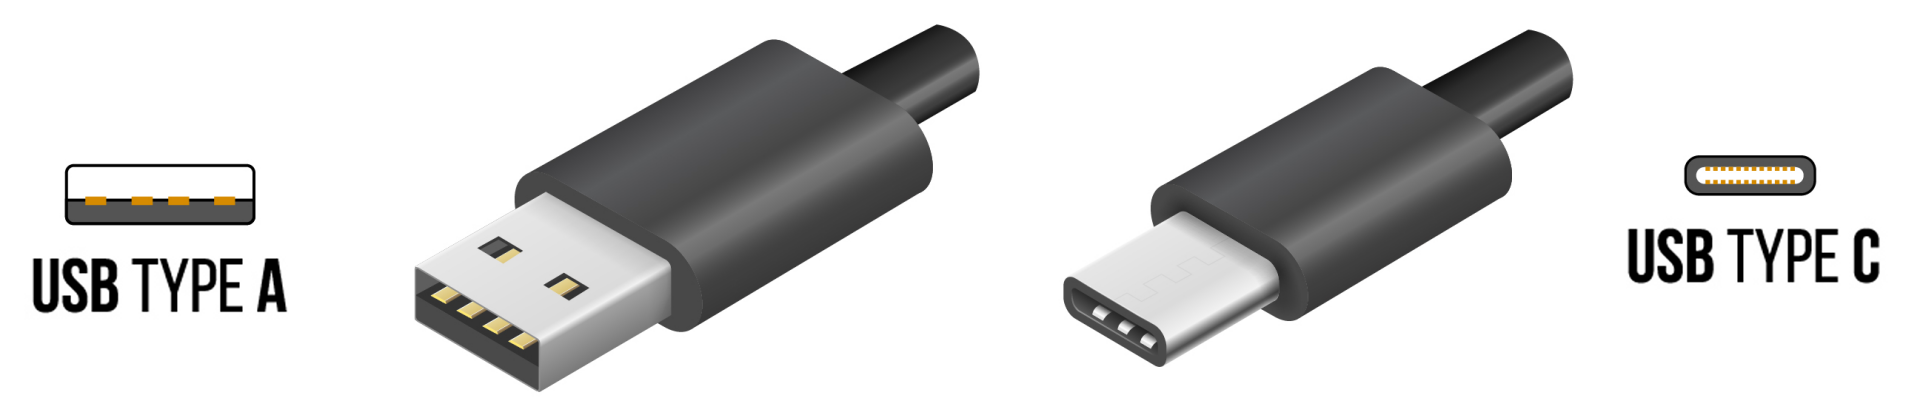 USB-A and USB-C Connectors